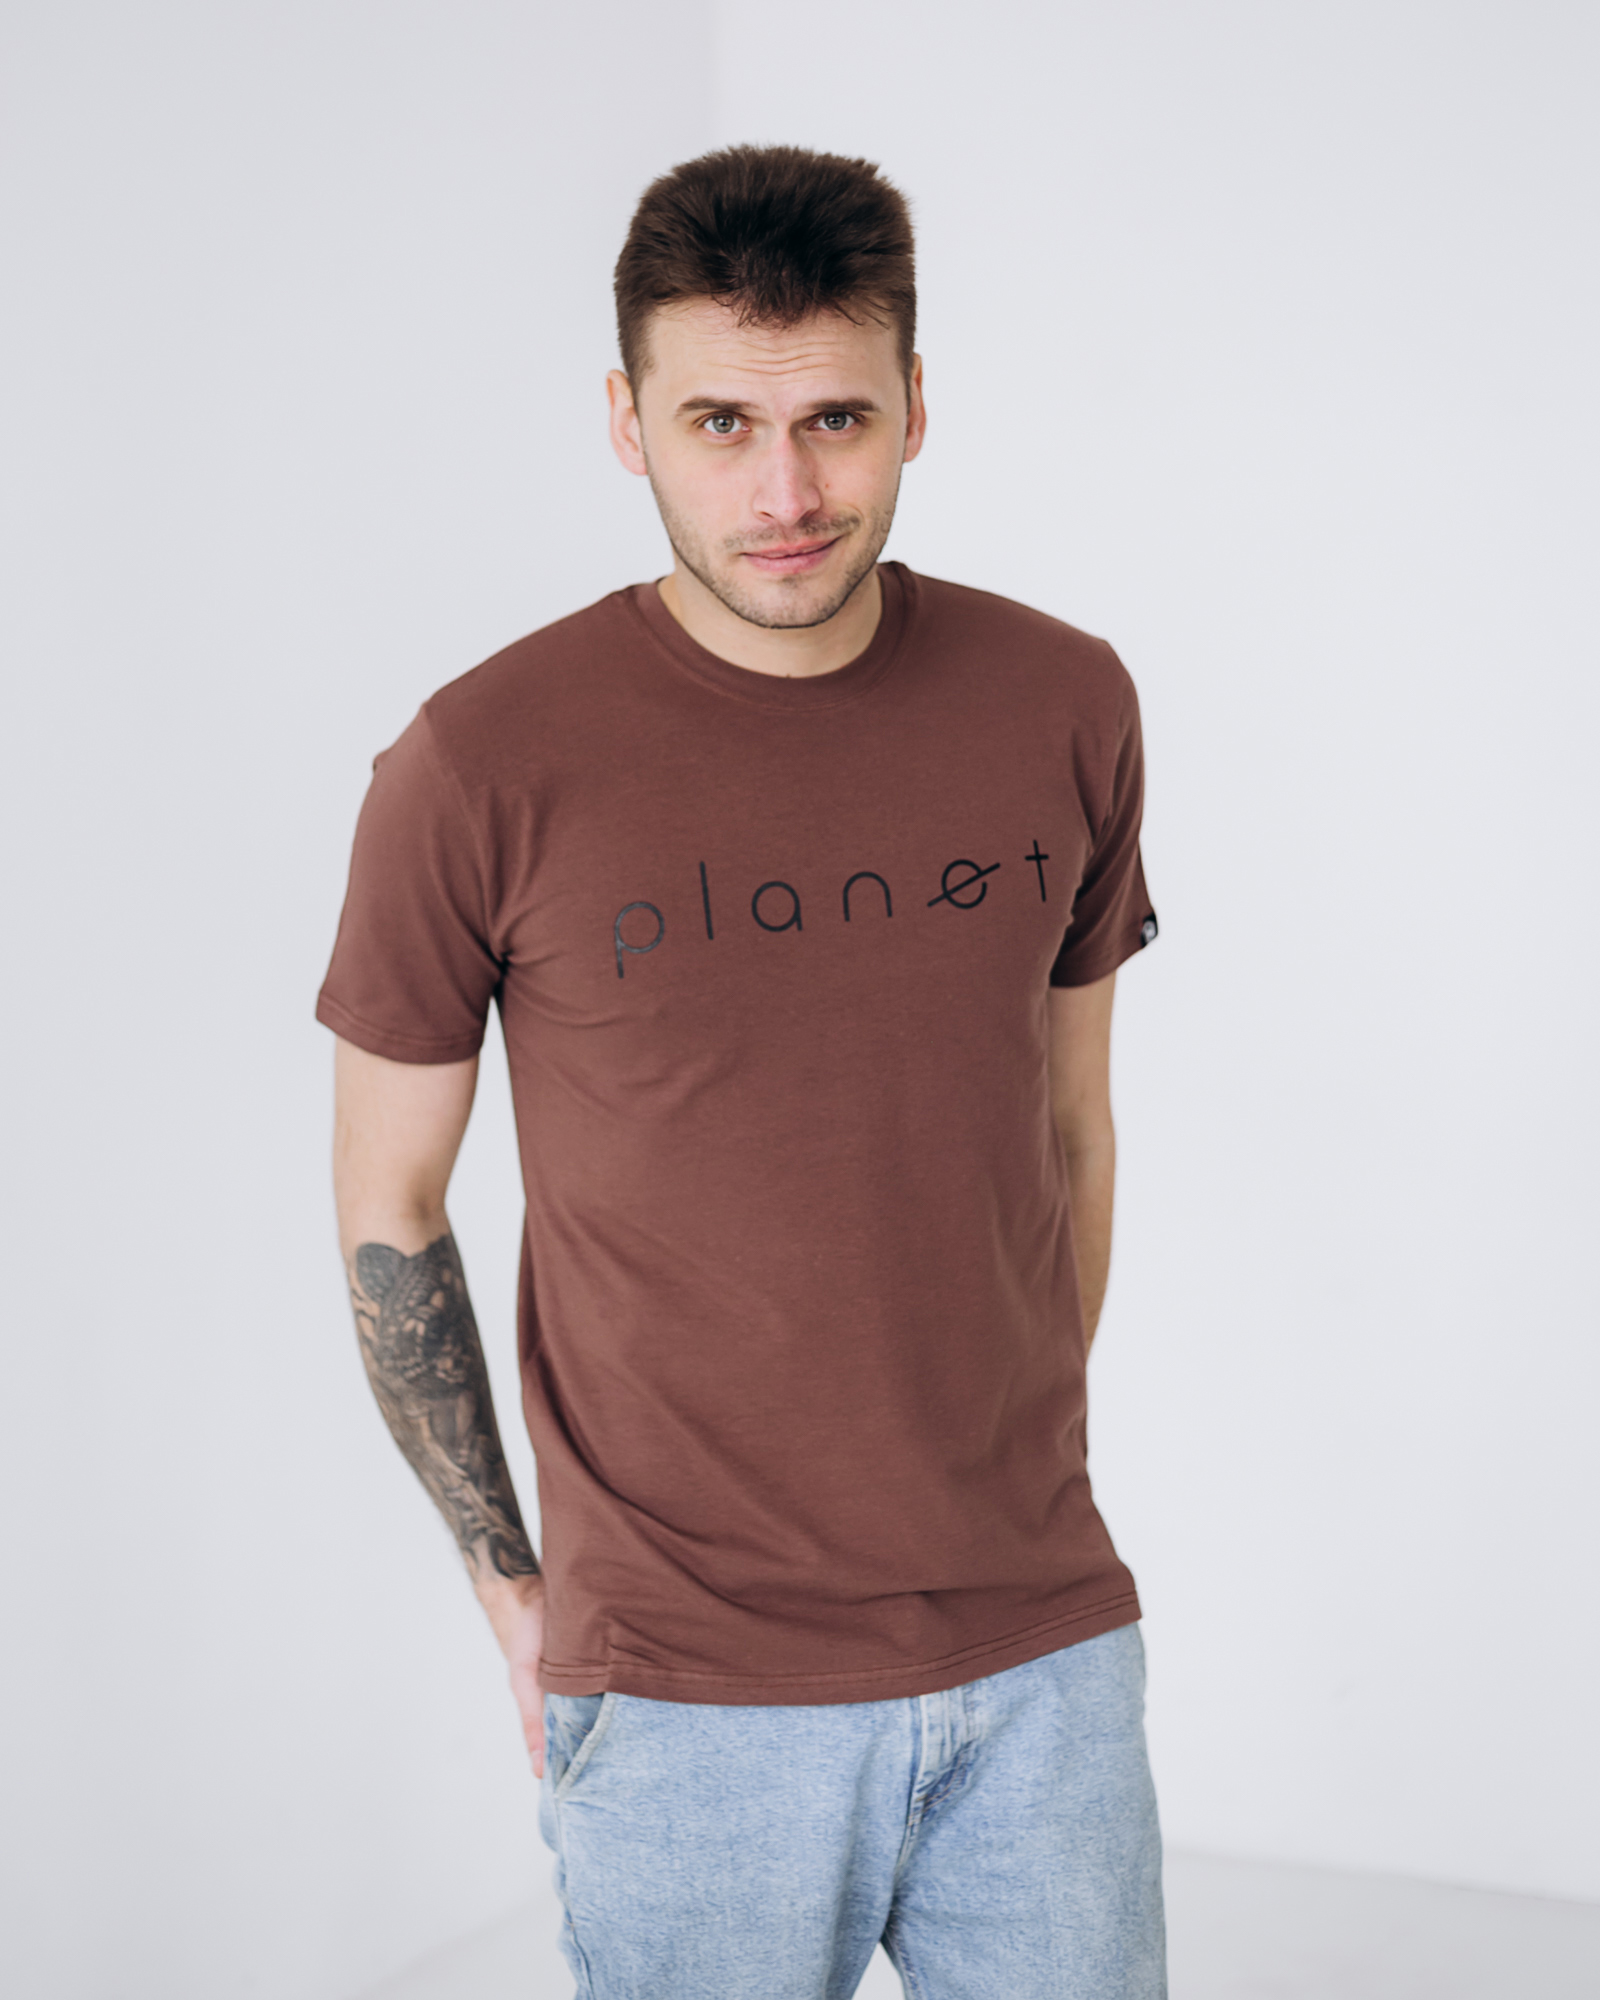 Чоловіча футболка planet 40102